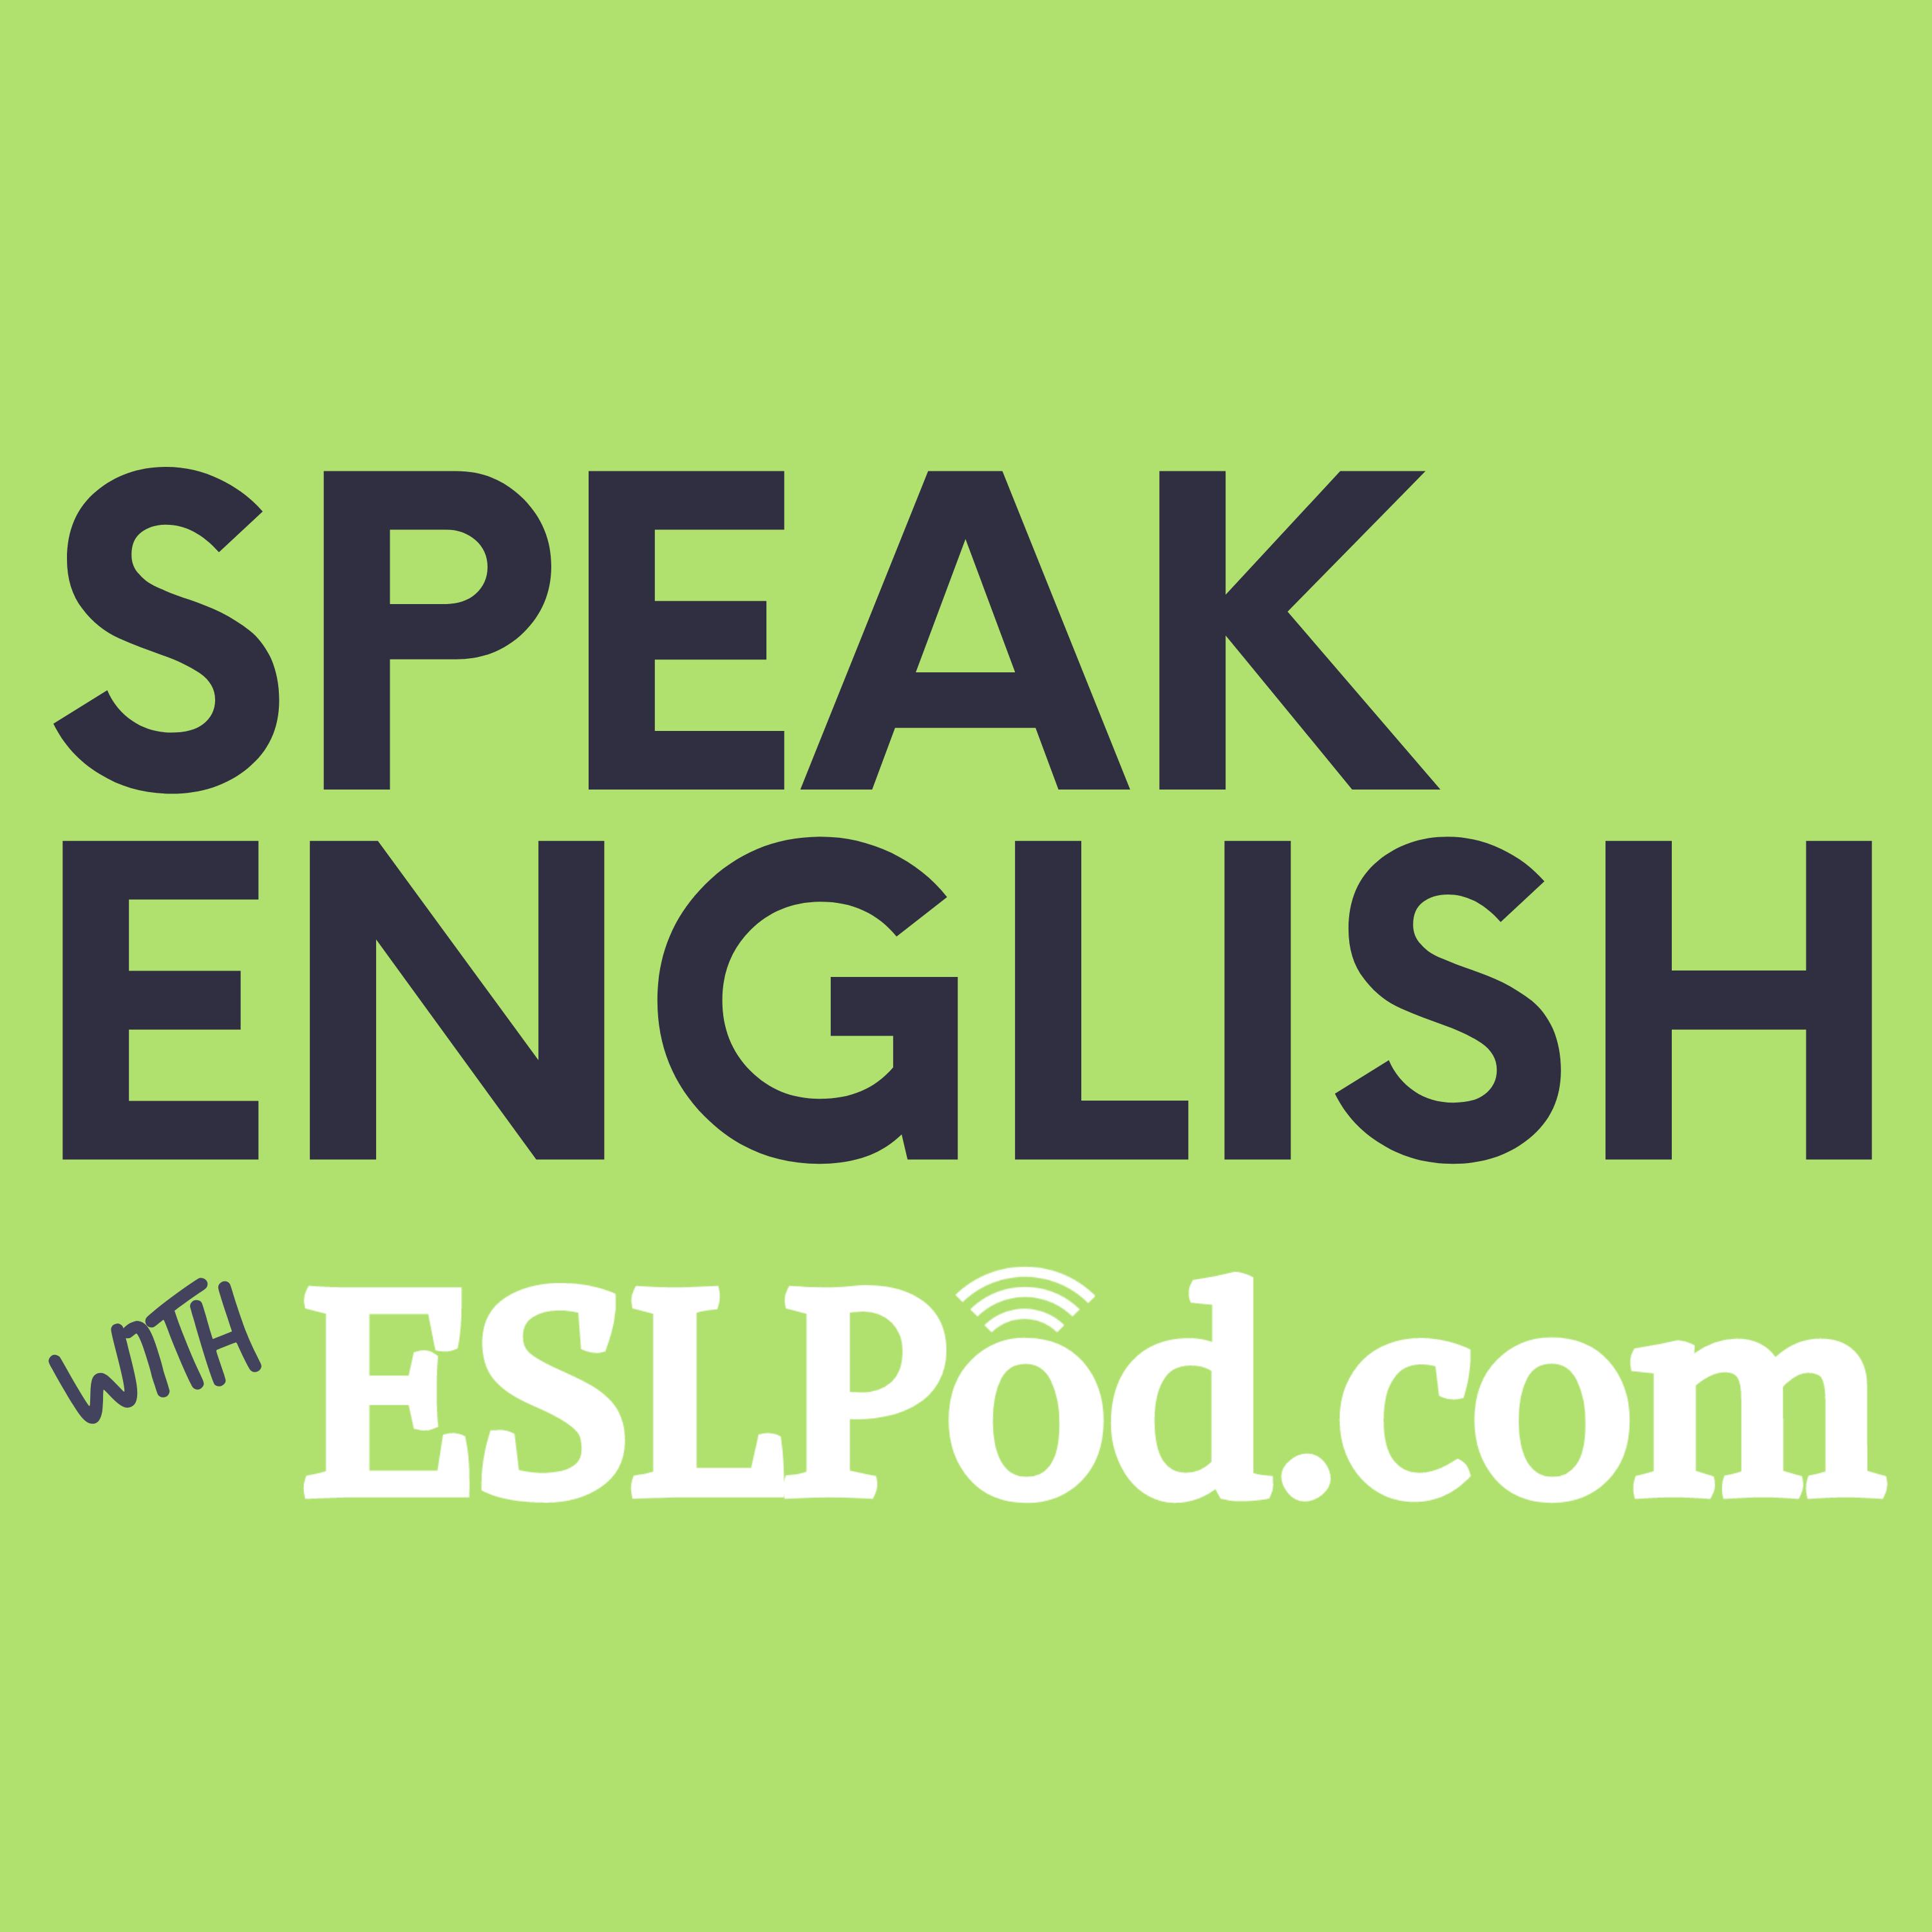 BBC Learning English - The English We Speak / Jog your memory